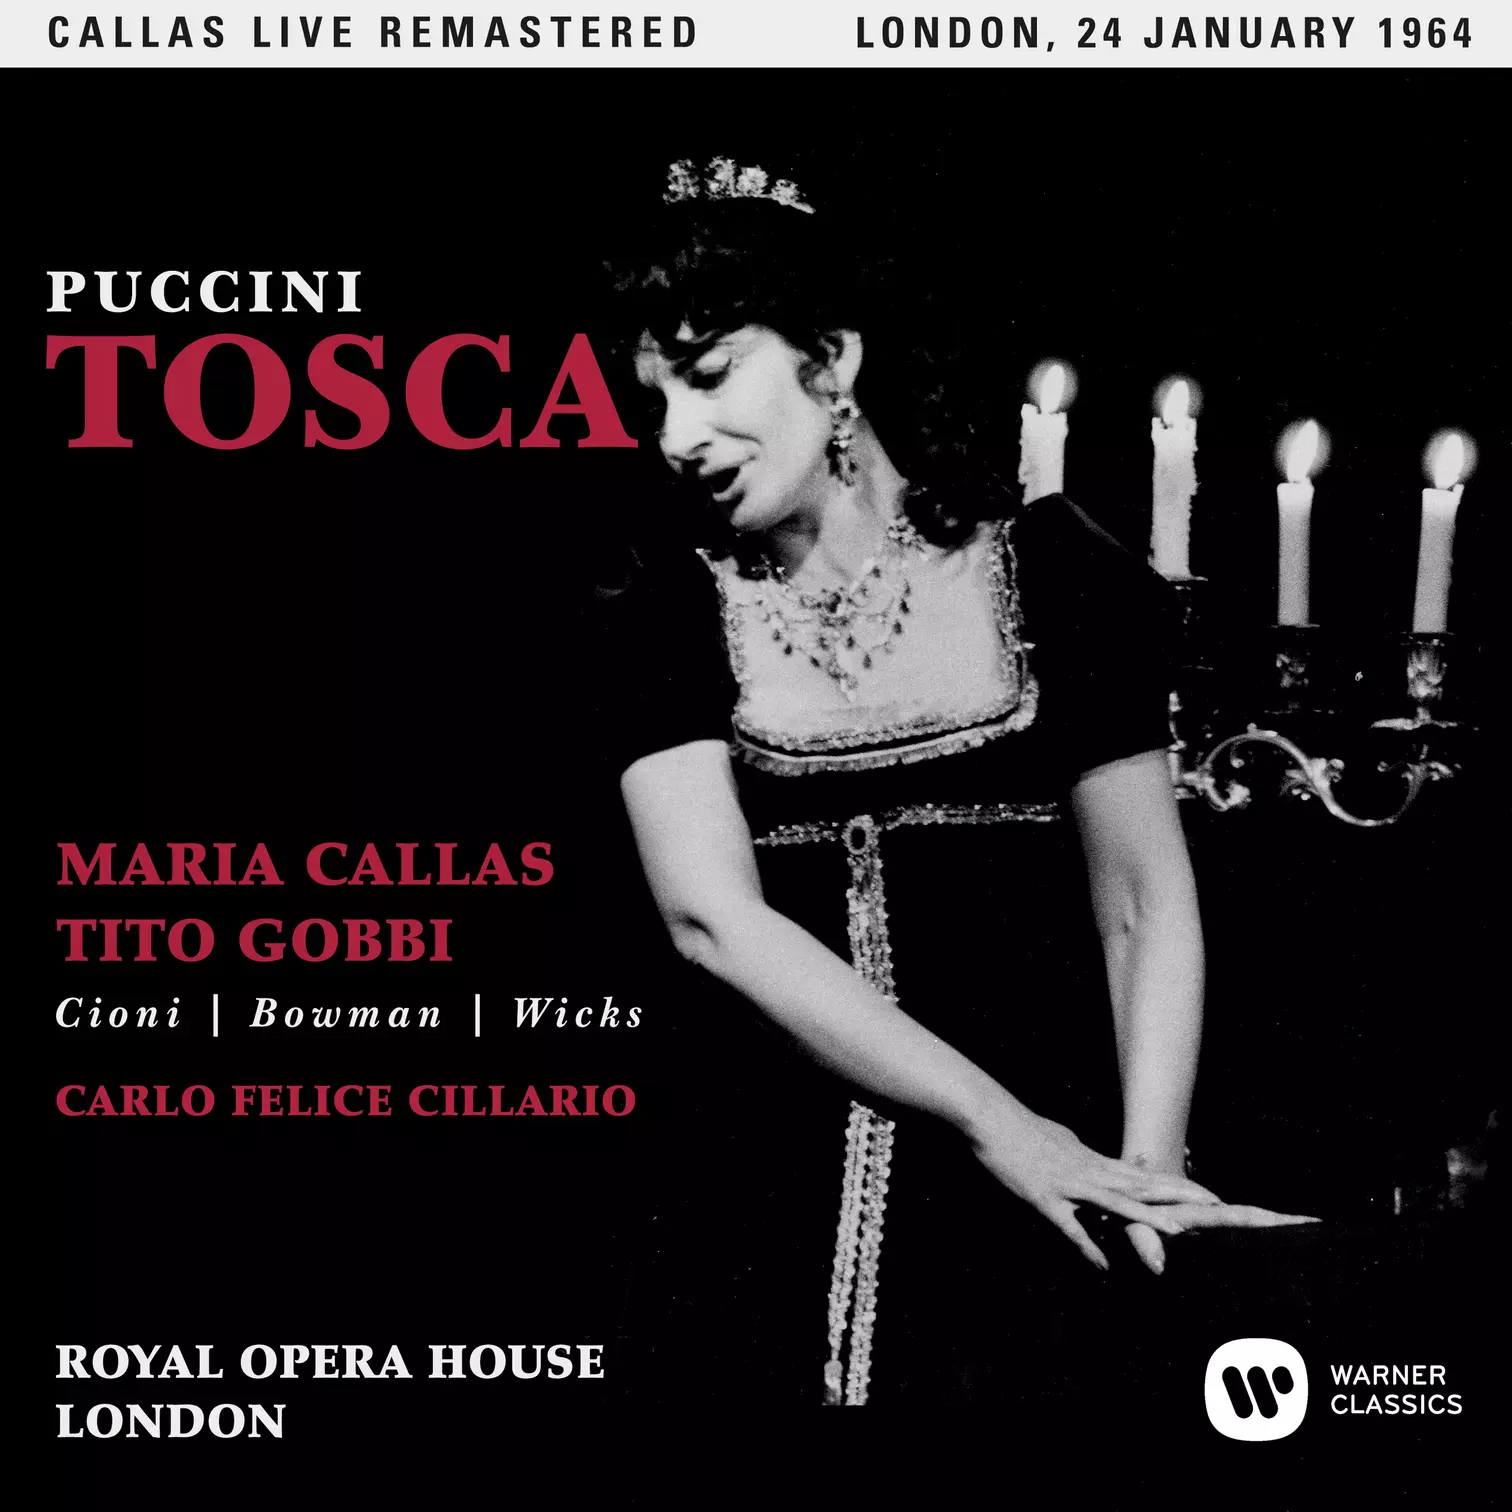 Puccini: Tosca (1964 - London) - Callas Live Remastered